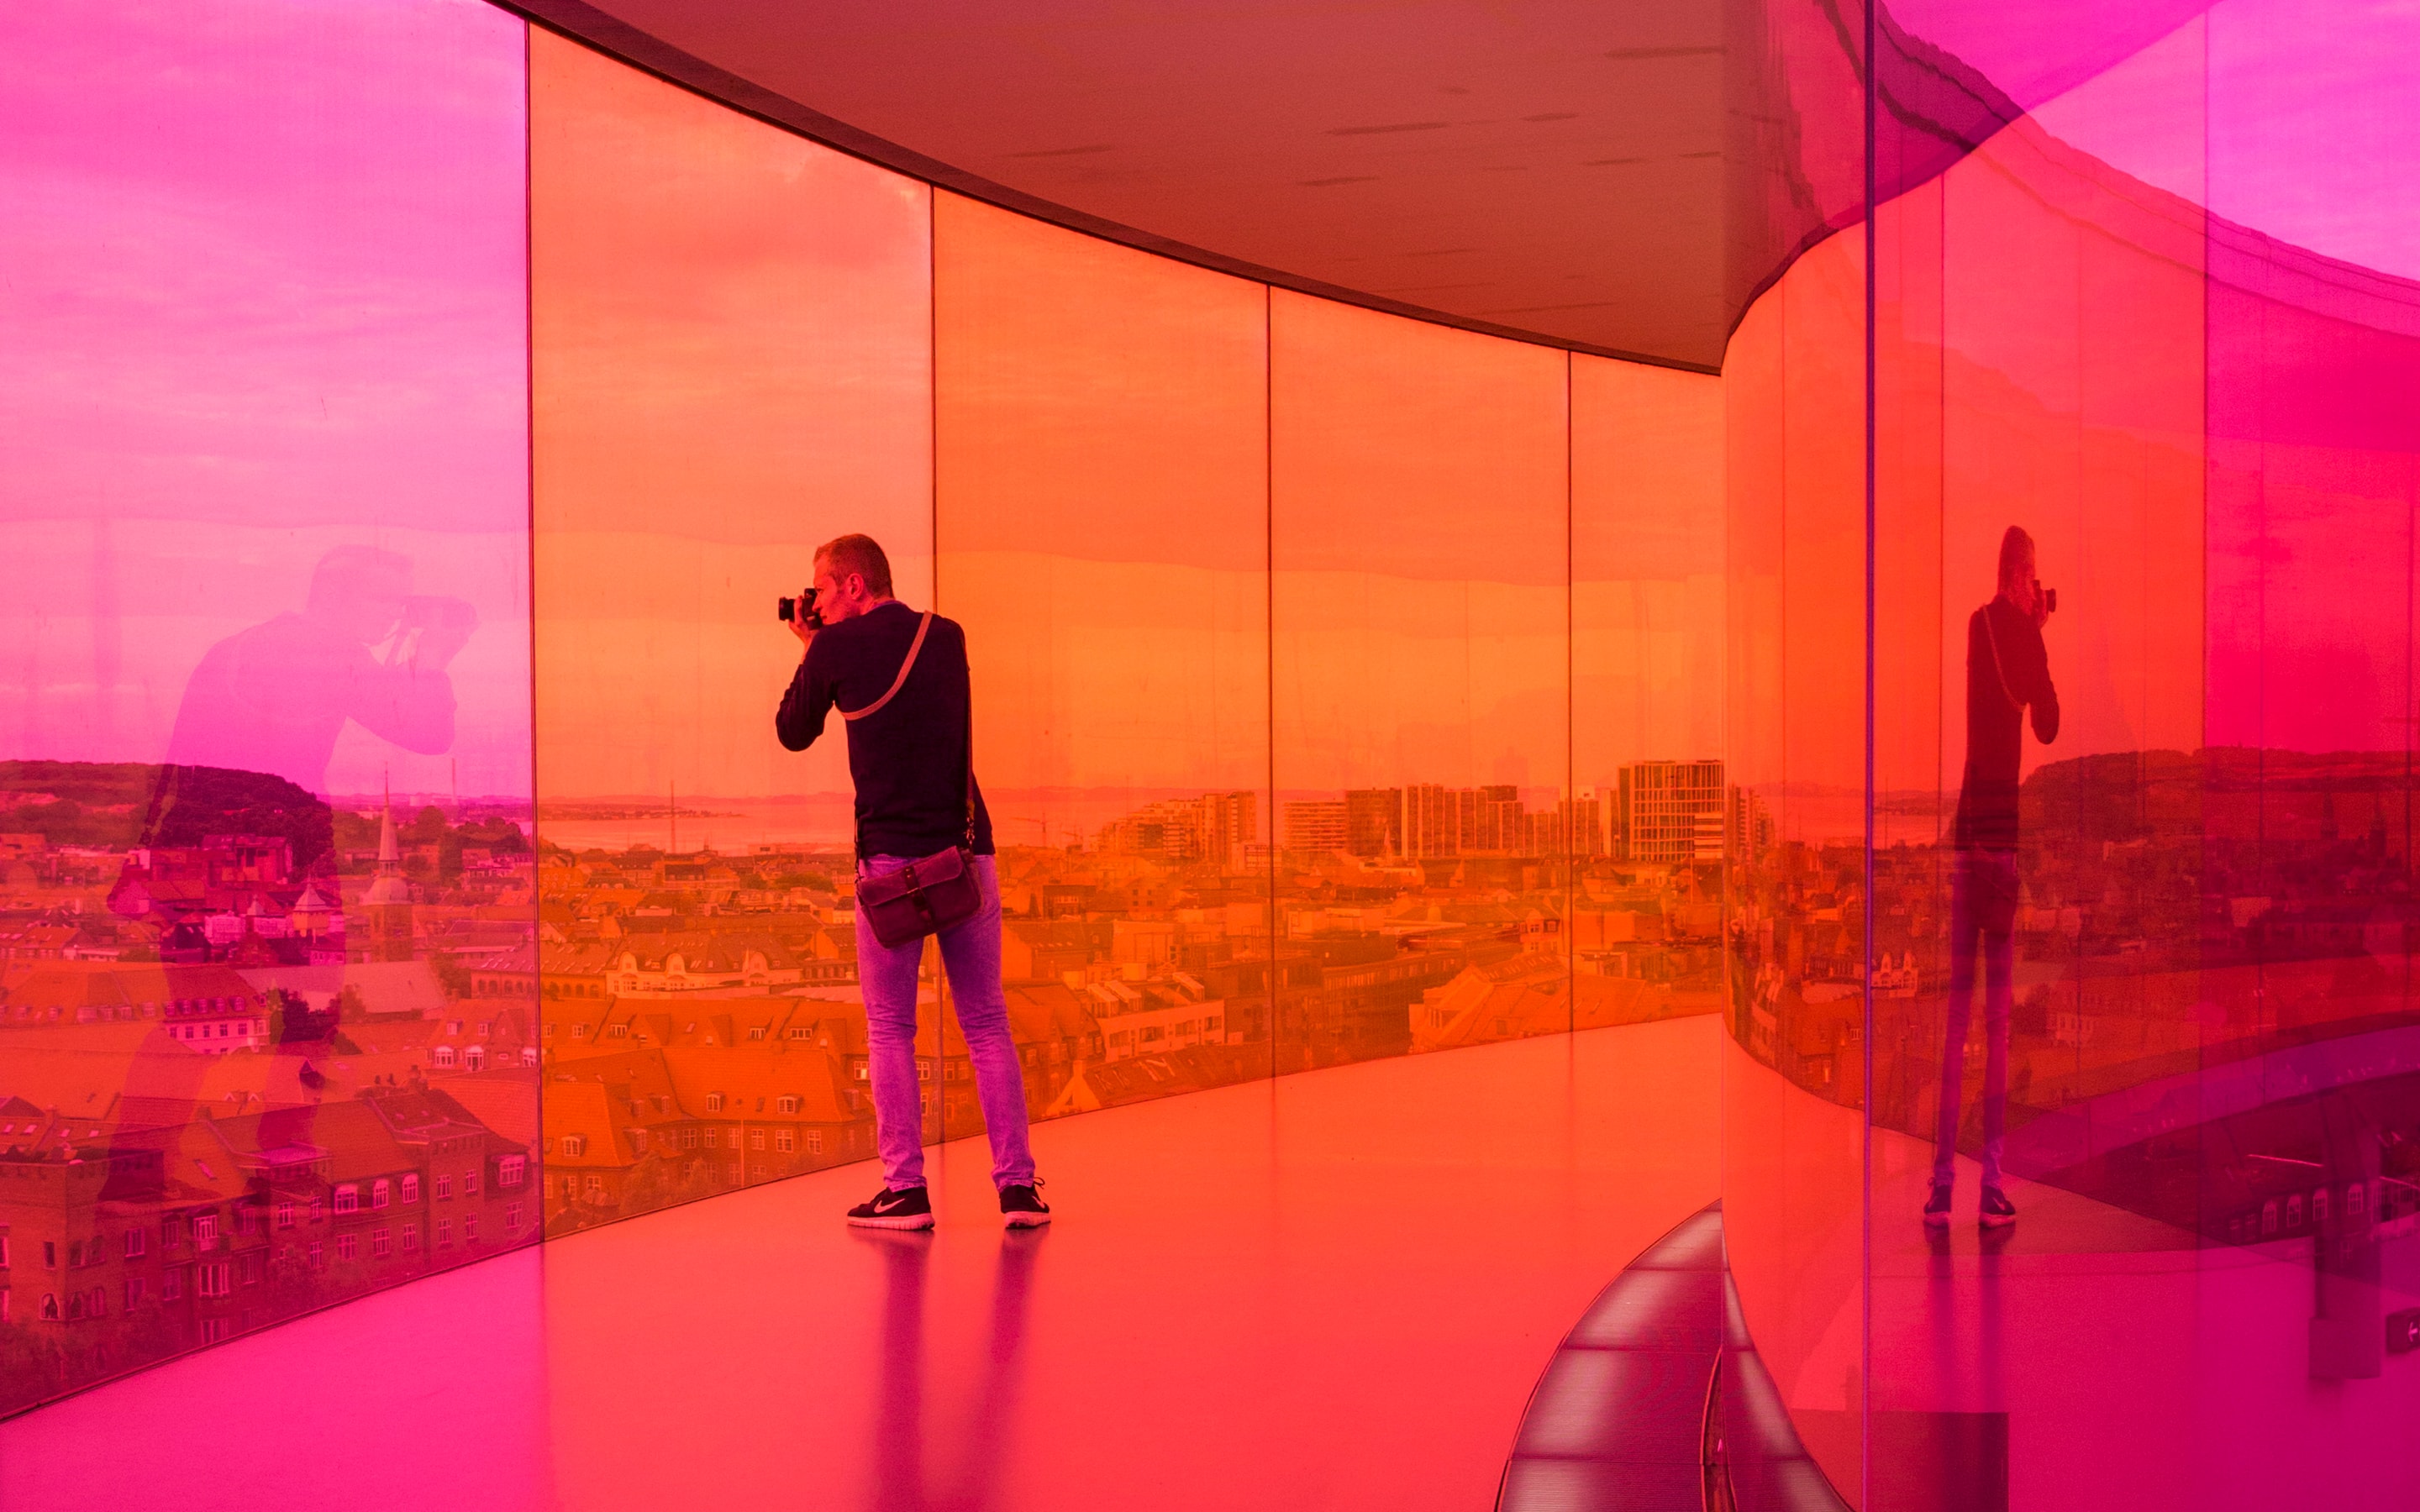 Your rainbow panorama, Olafur Eliasson, 2006 - 2011, ARoS Aarhus Art Museum, Dänemark